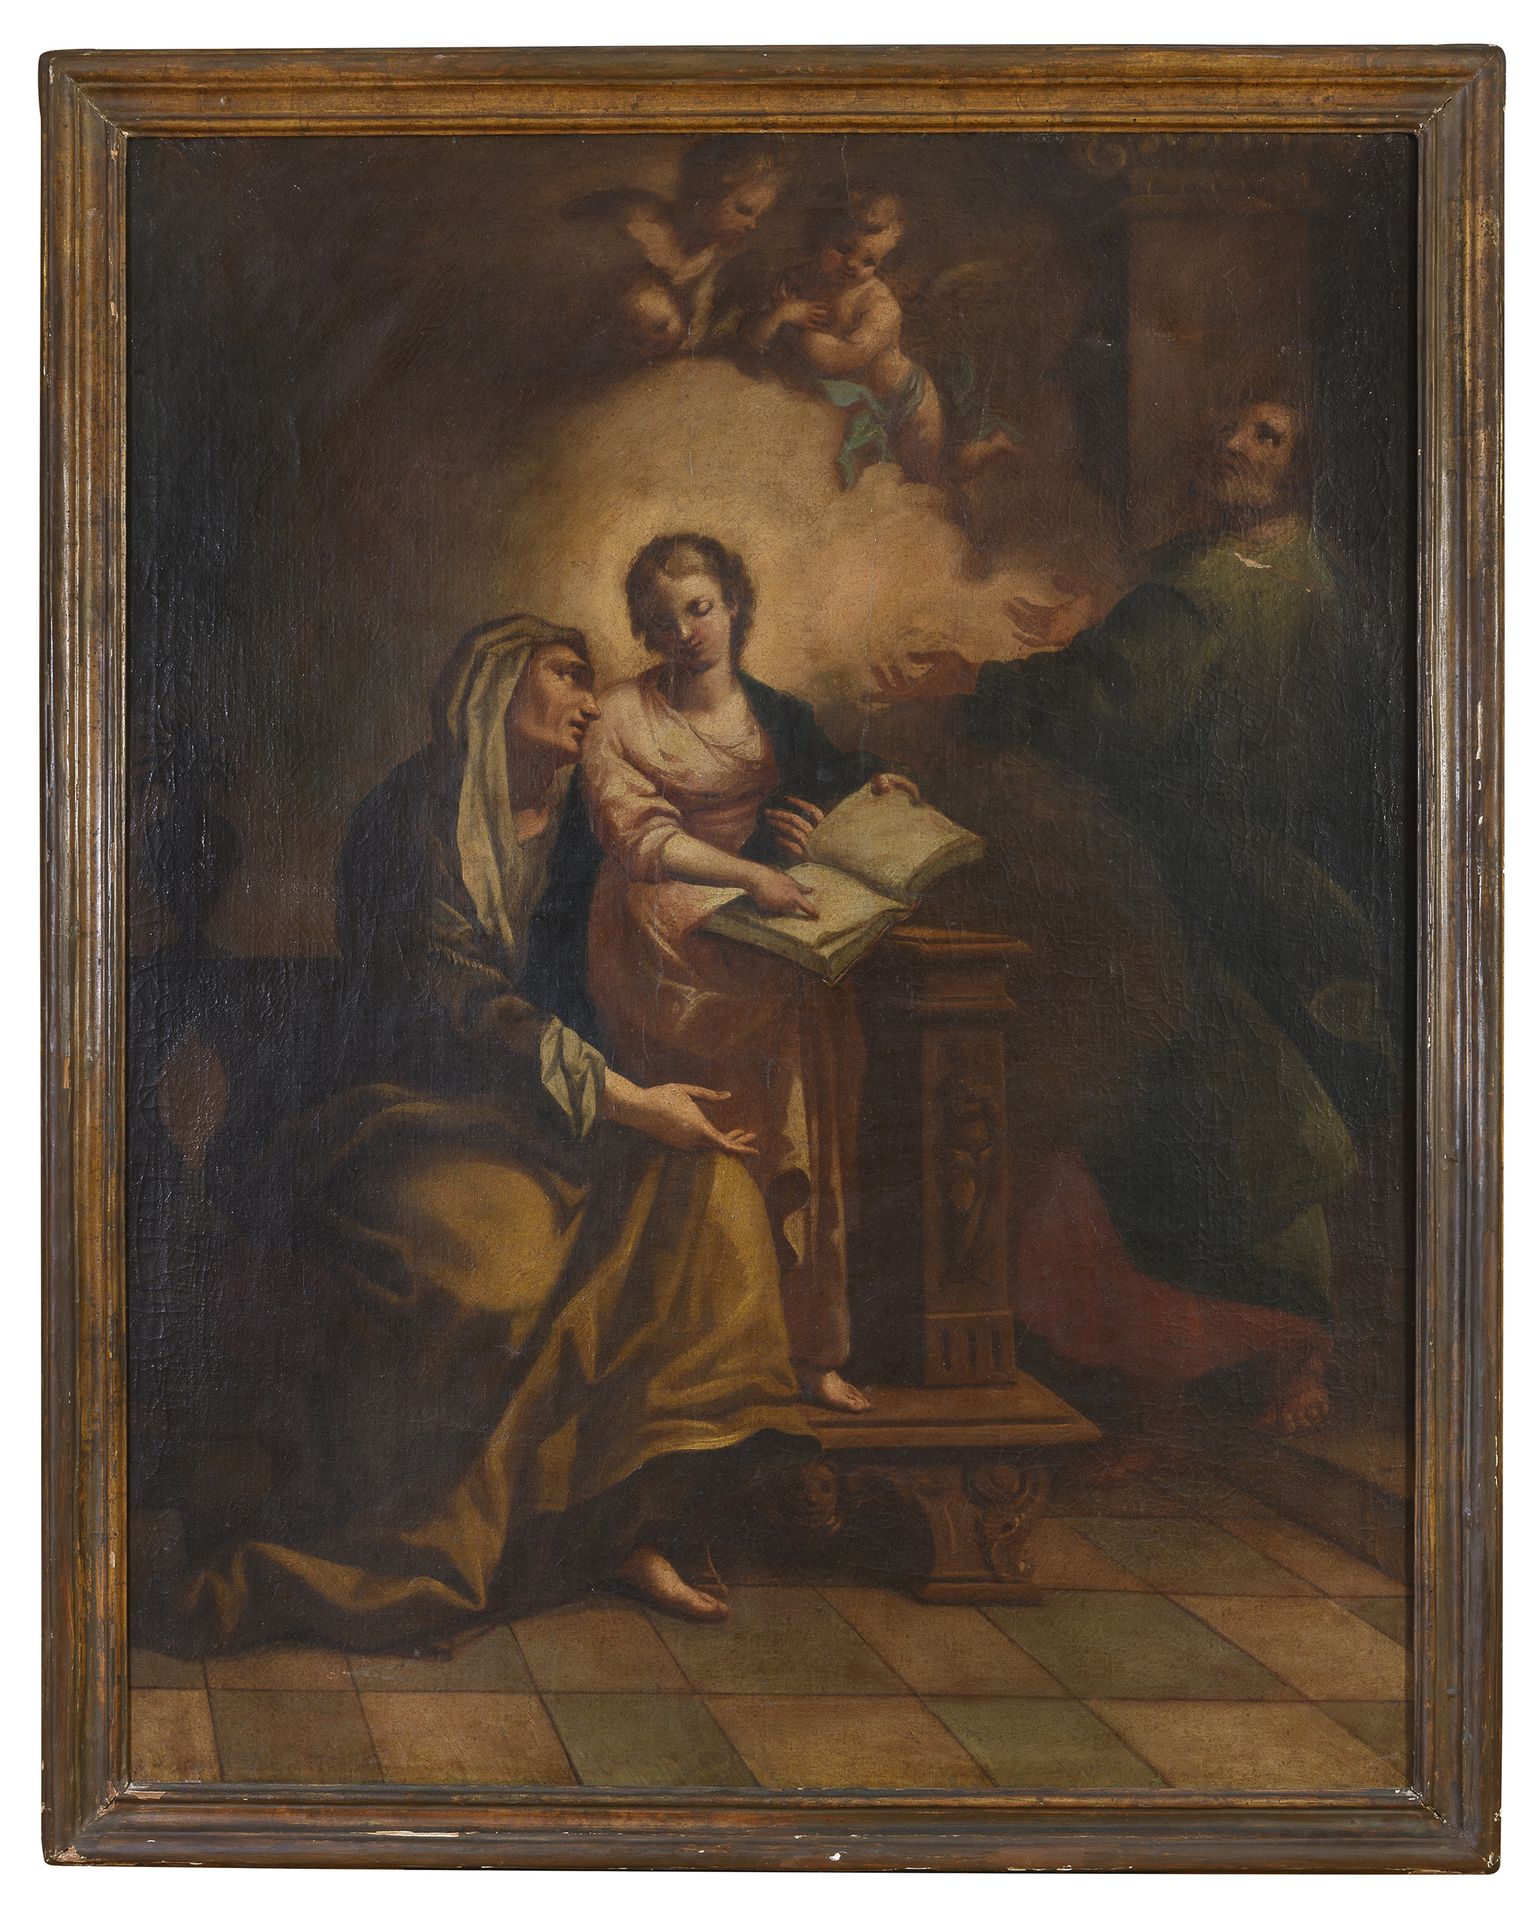 Null 那不勒斯画家，18世纪



处女的教育

布面油画，122 x 95厘米



起源

罗马家族



画的状况

二十世纪的林特洛。右上角有一小块&hellip;